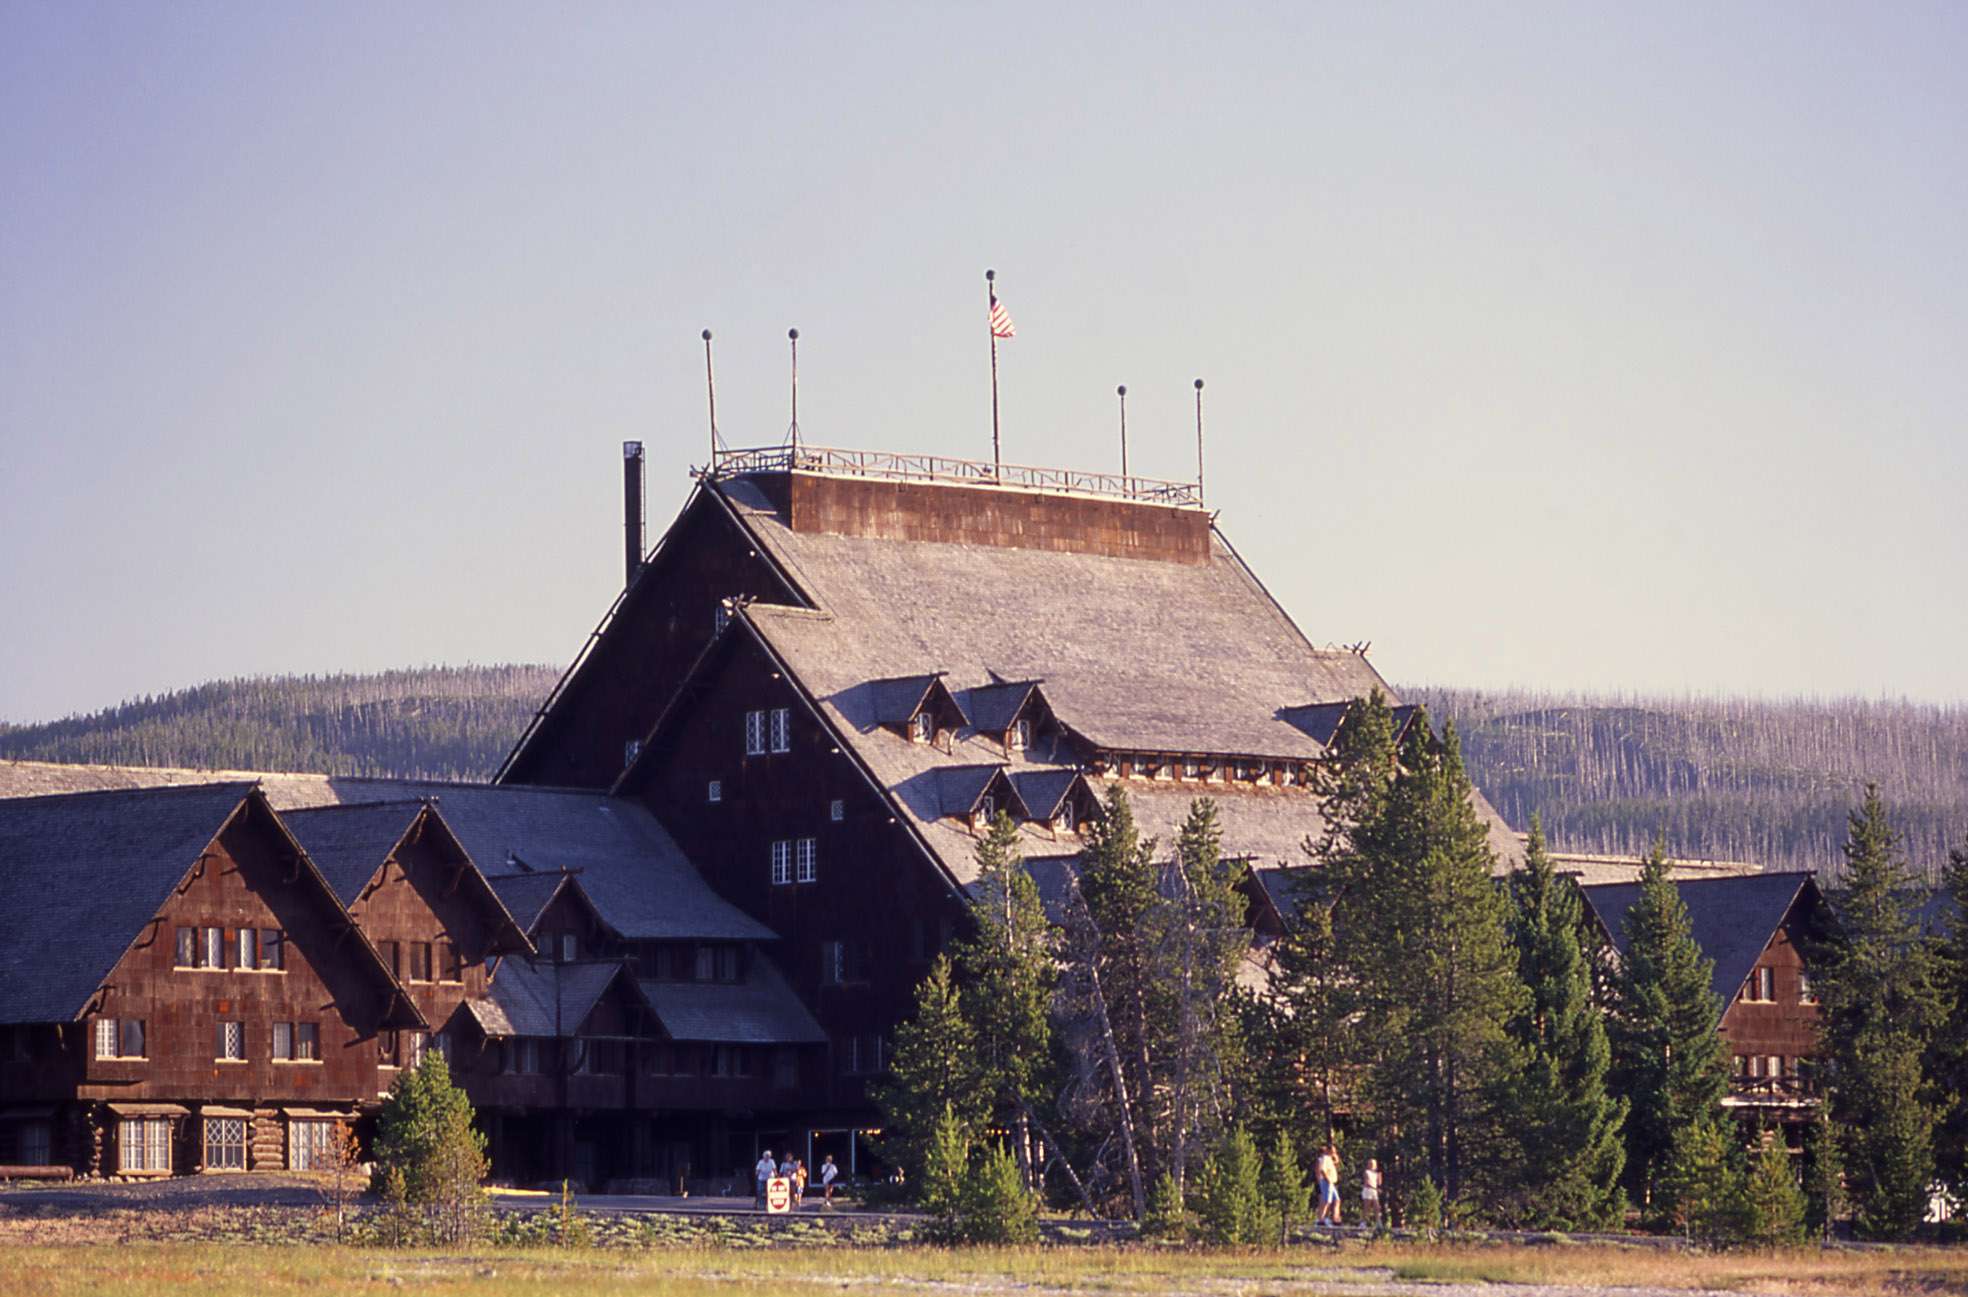 Yellowstone's Old Faithful Inn